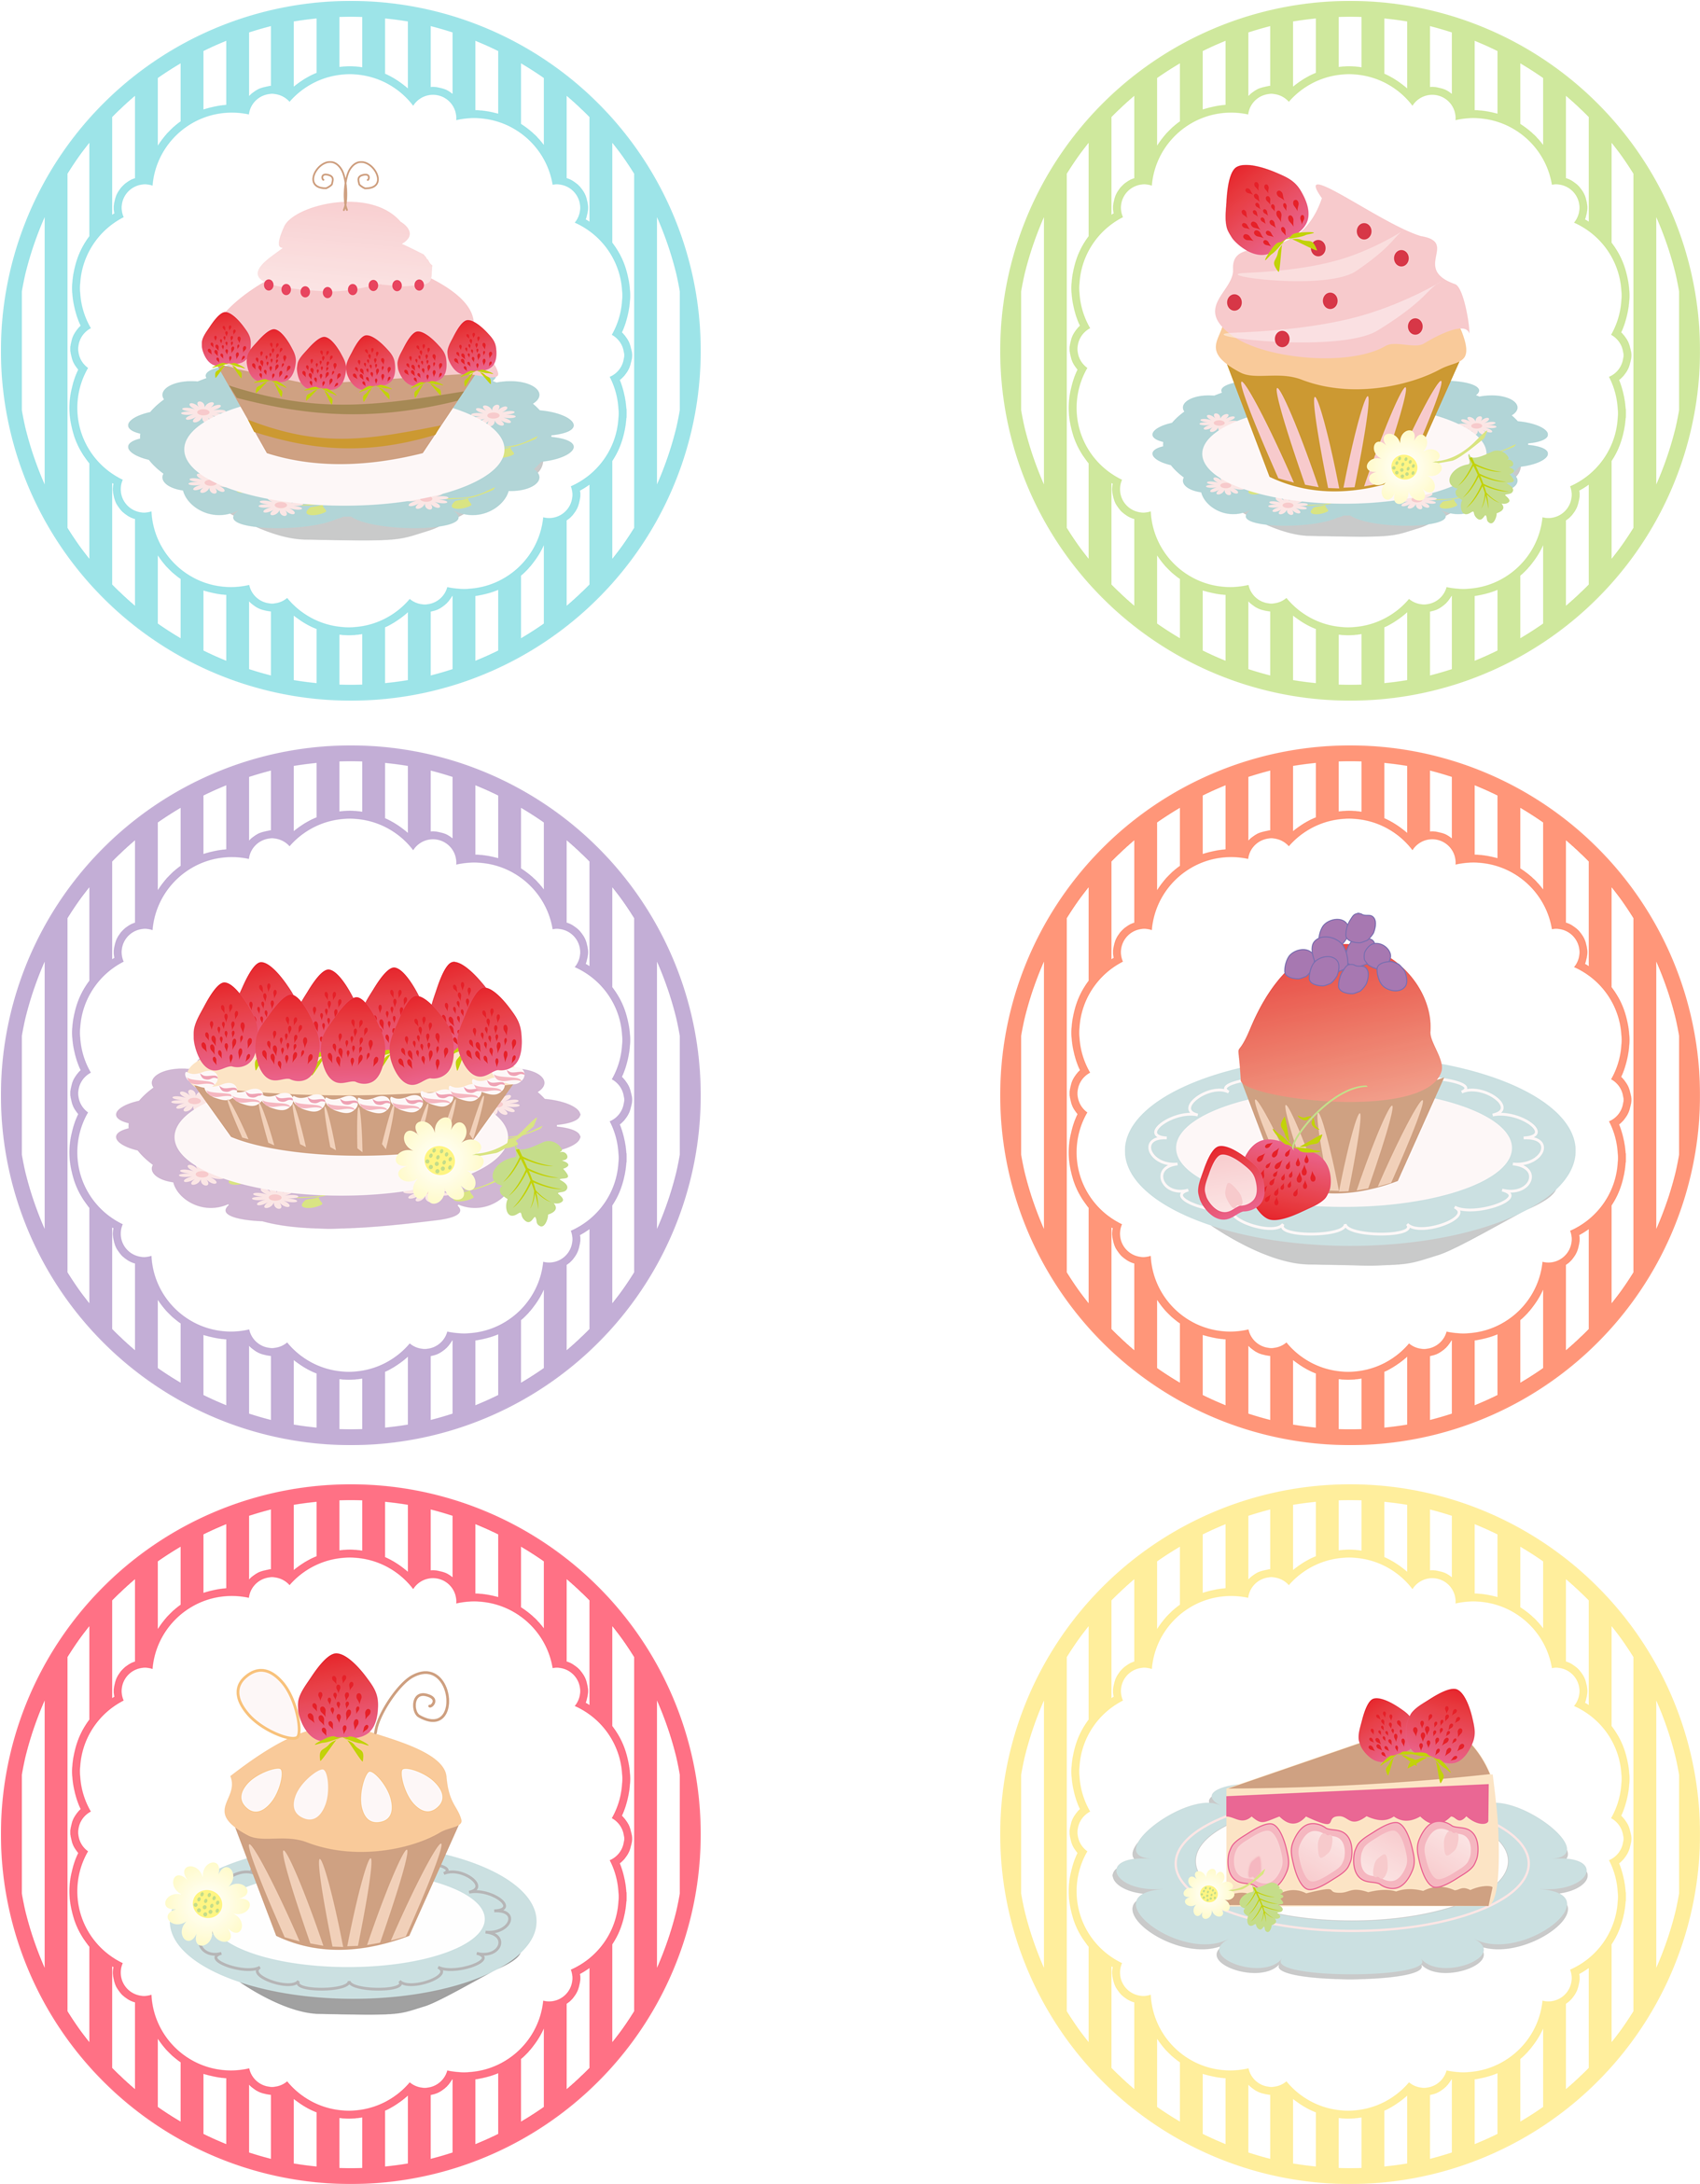 Assorted Cake Logos Set